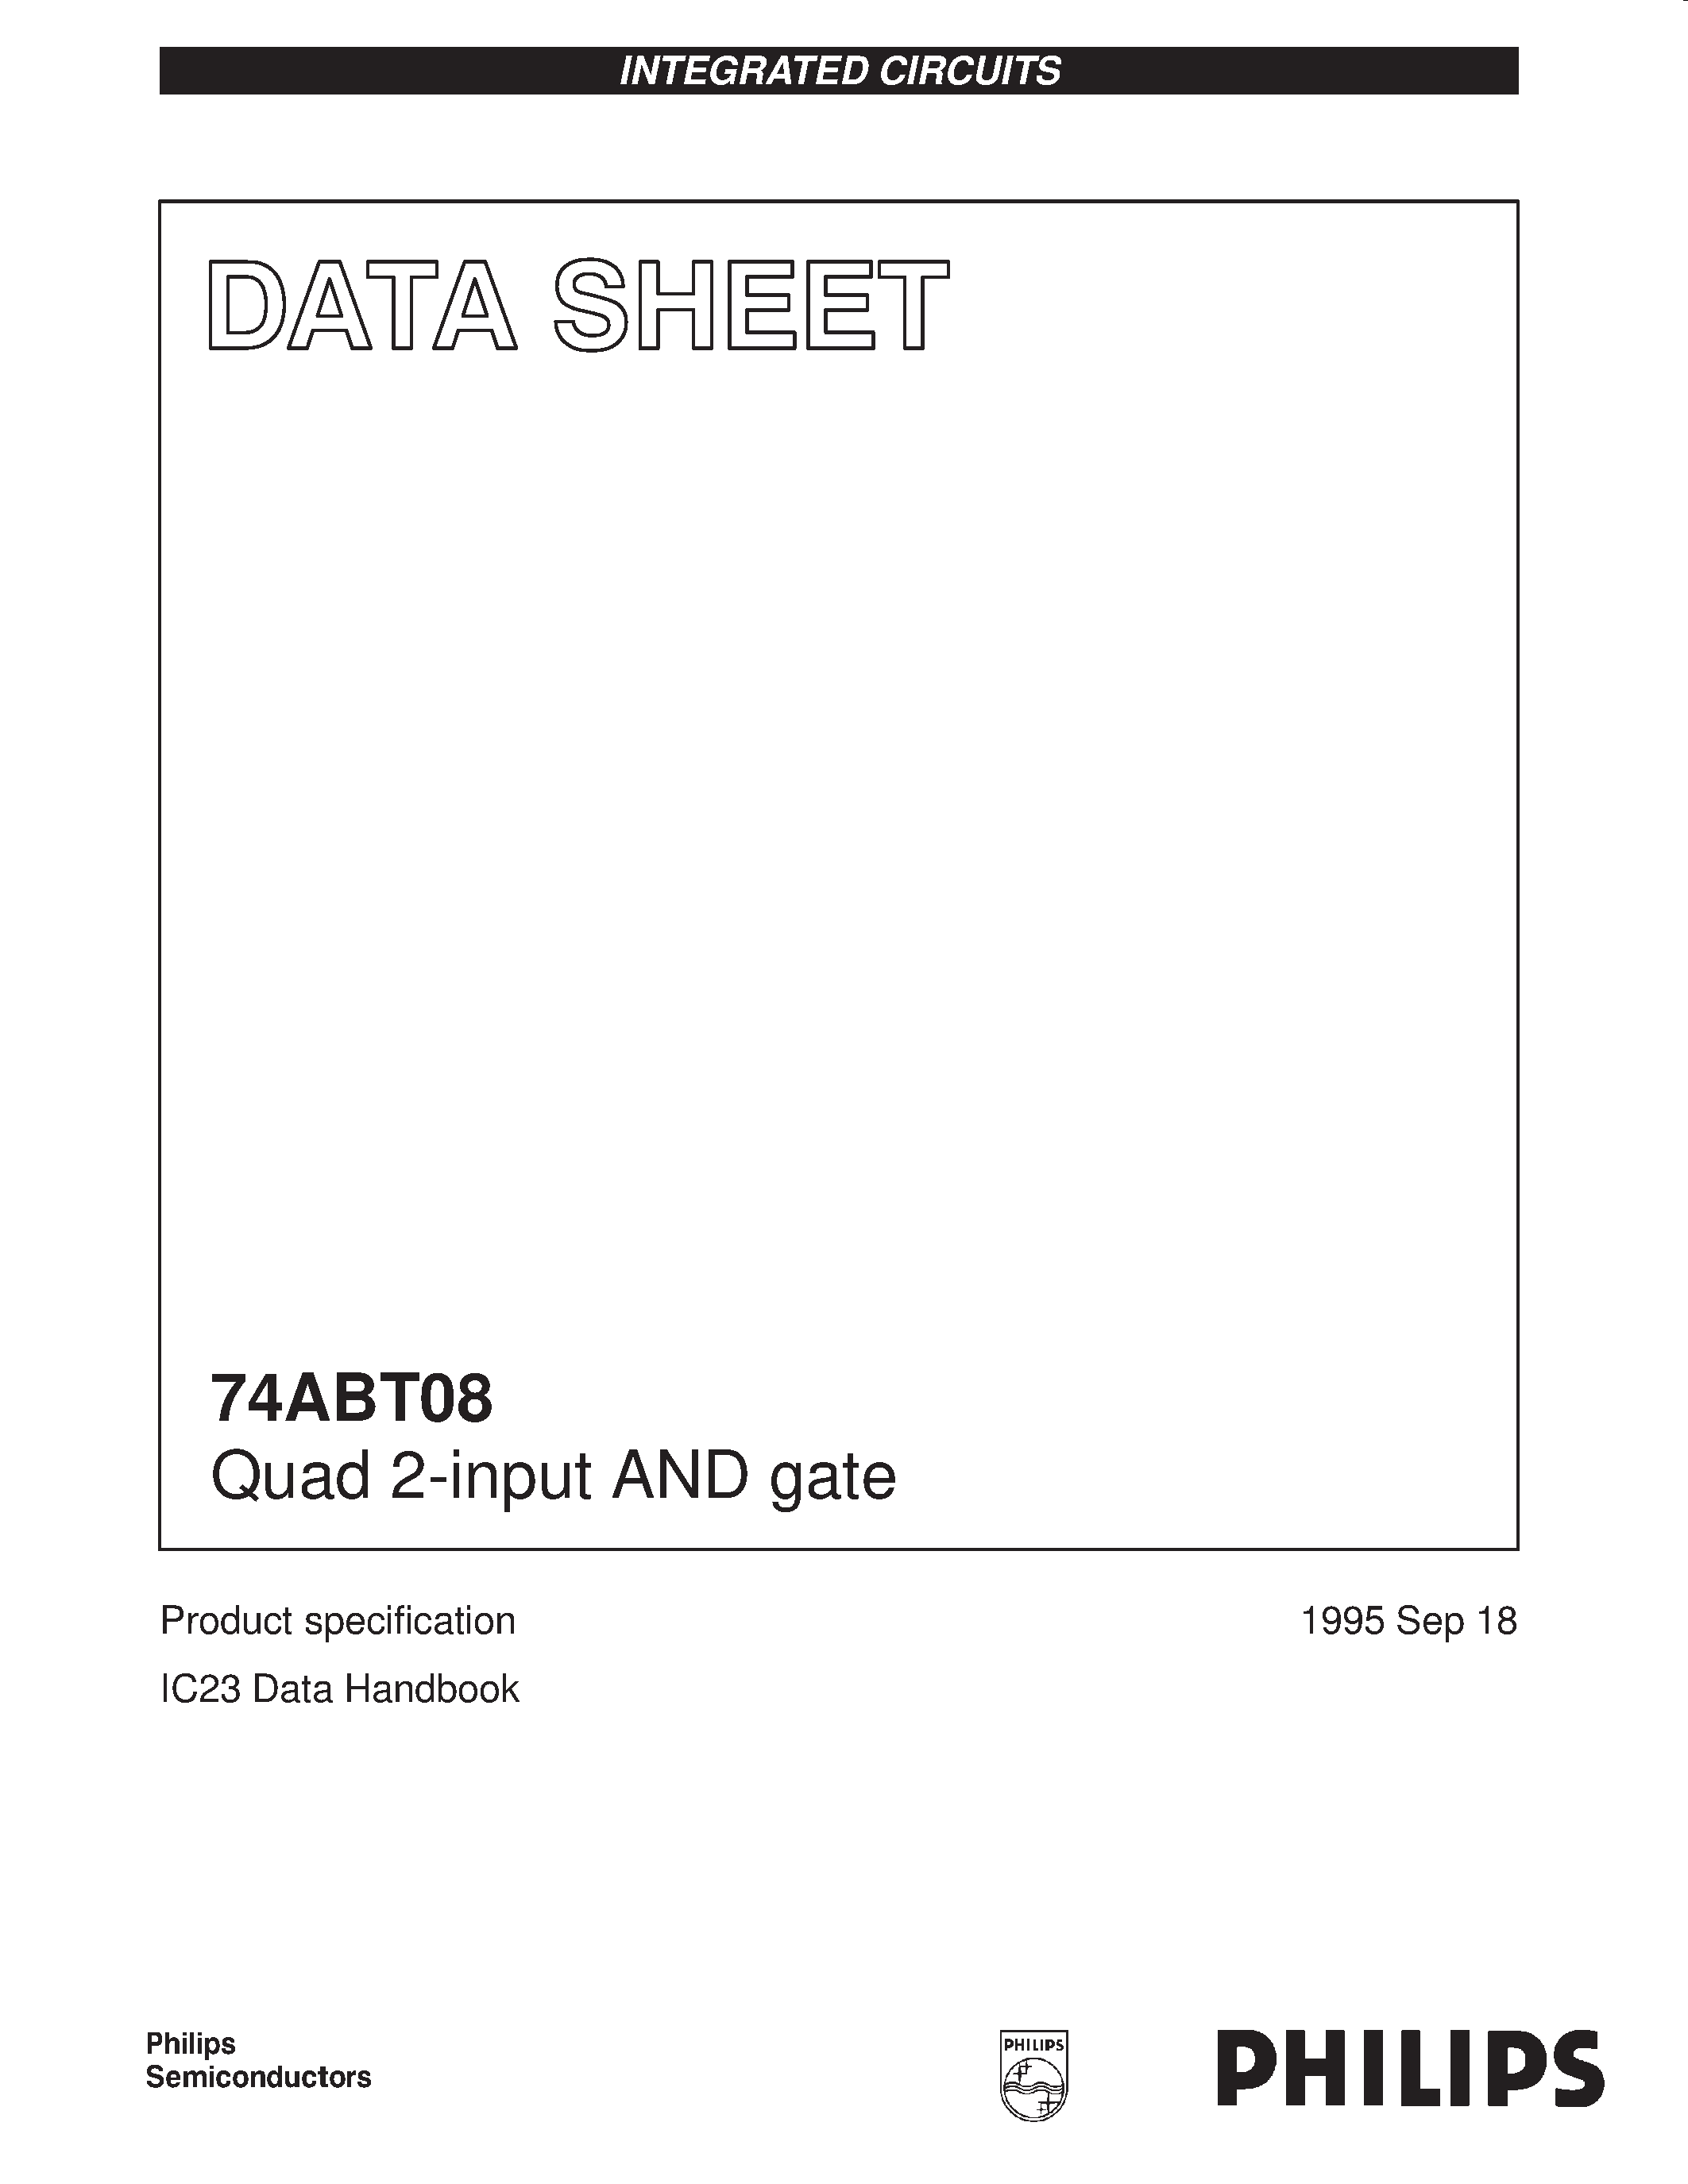 Даташит 74ABT08PWDH - Quad 2-input AND gate страница 1